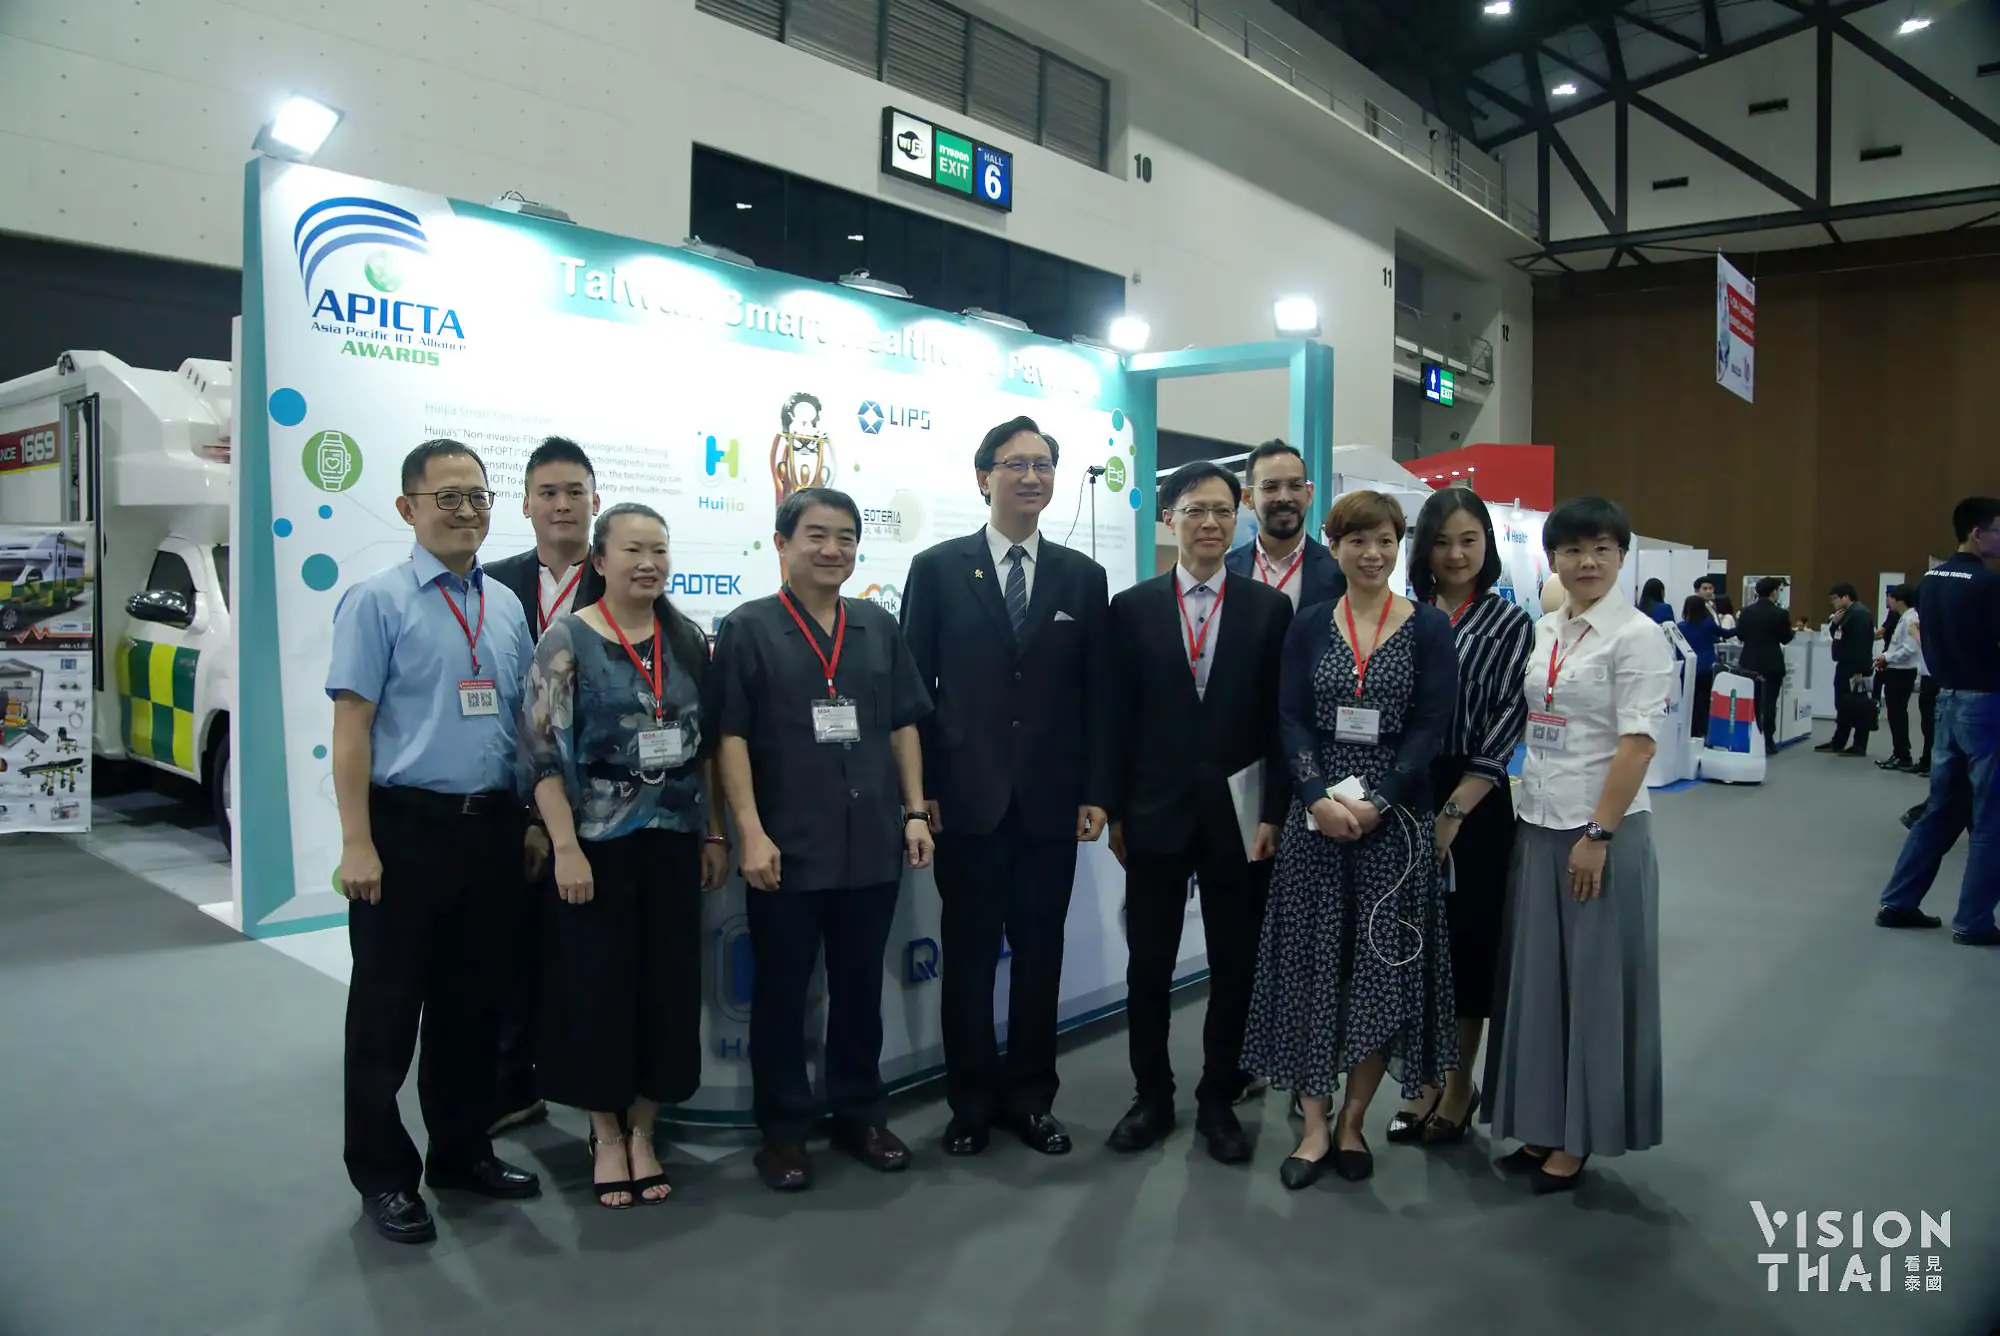 由左至右分別為立普斯、麗臺、滙嘉業者代表、台灣醫療暨生技公會理事長、駐泰代表童振源、台灣新竹生醫育成中心、太暘科技代表及台北市電腦公會的策展團隊